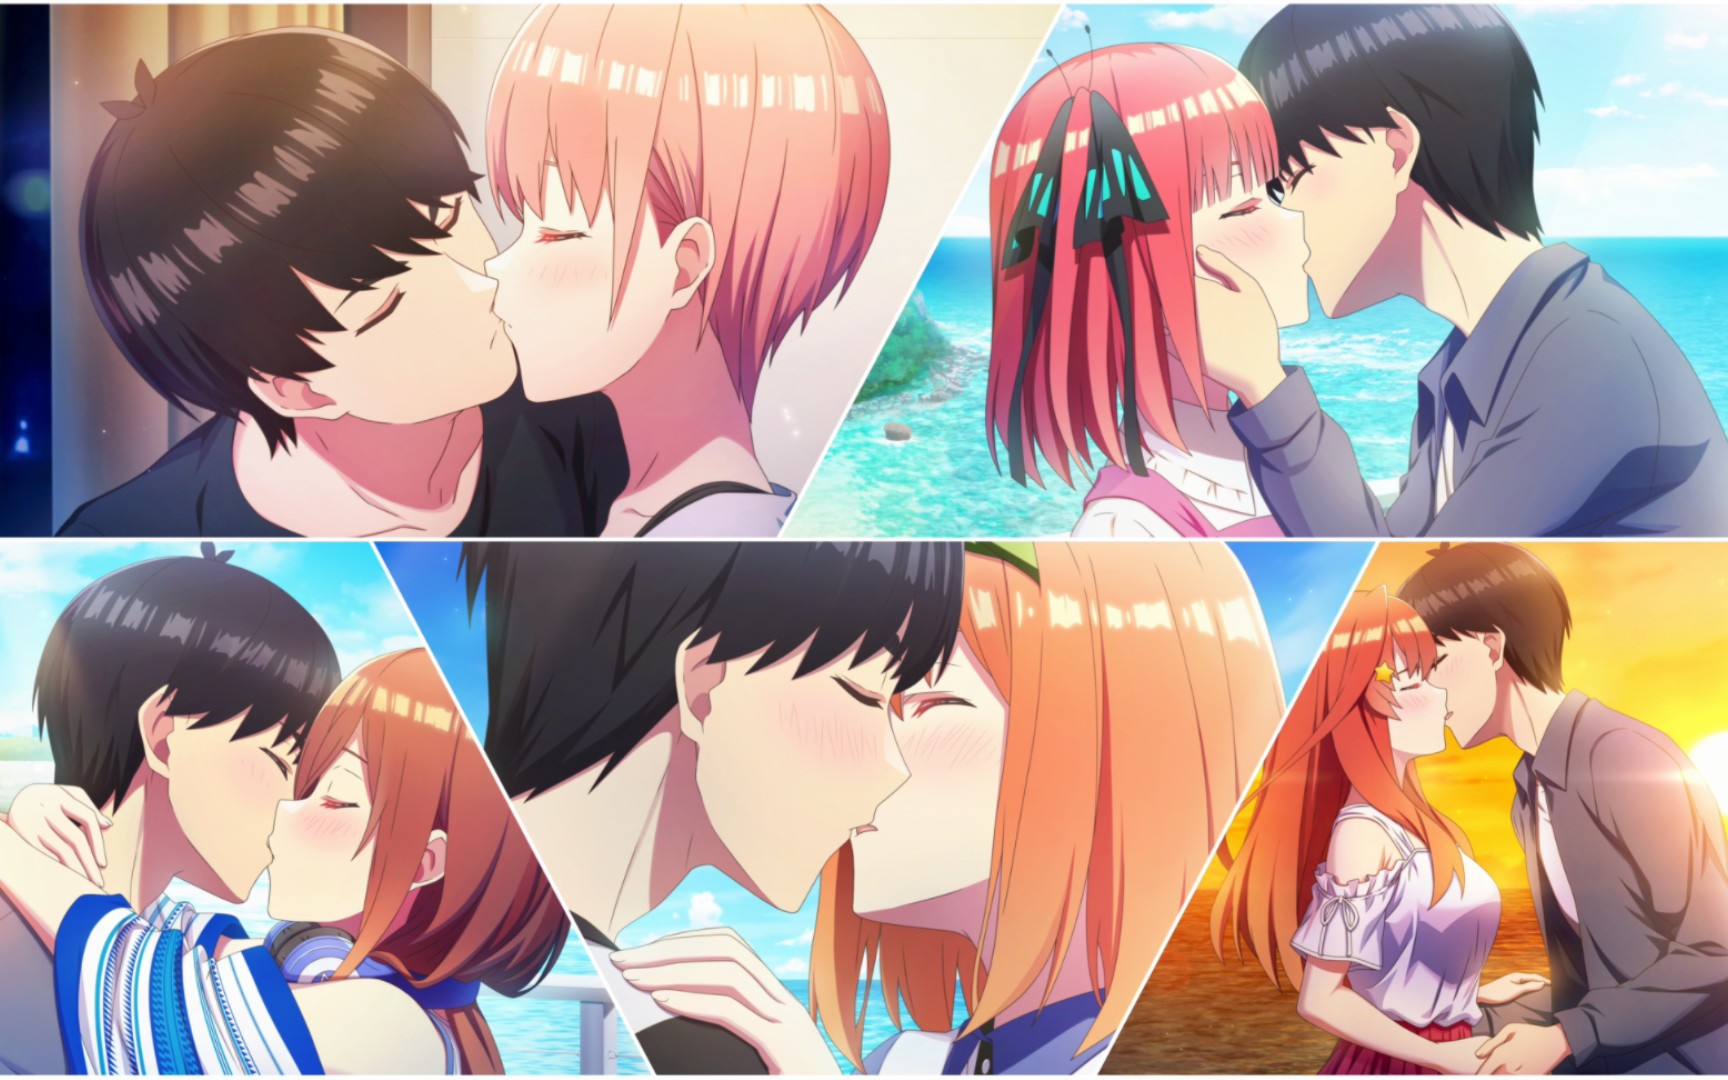 Futaro beija a Itsuki como Presente! The Quintessential Quintuplets Movies  (PT-BR) 🇧🇷 